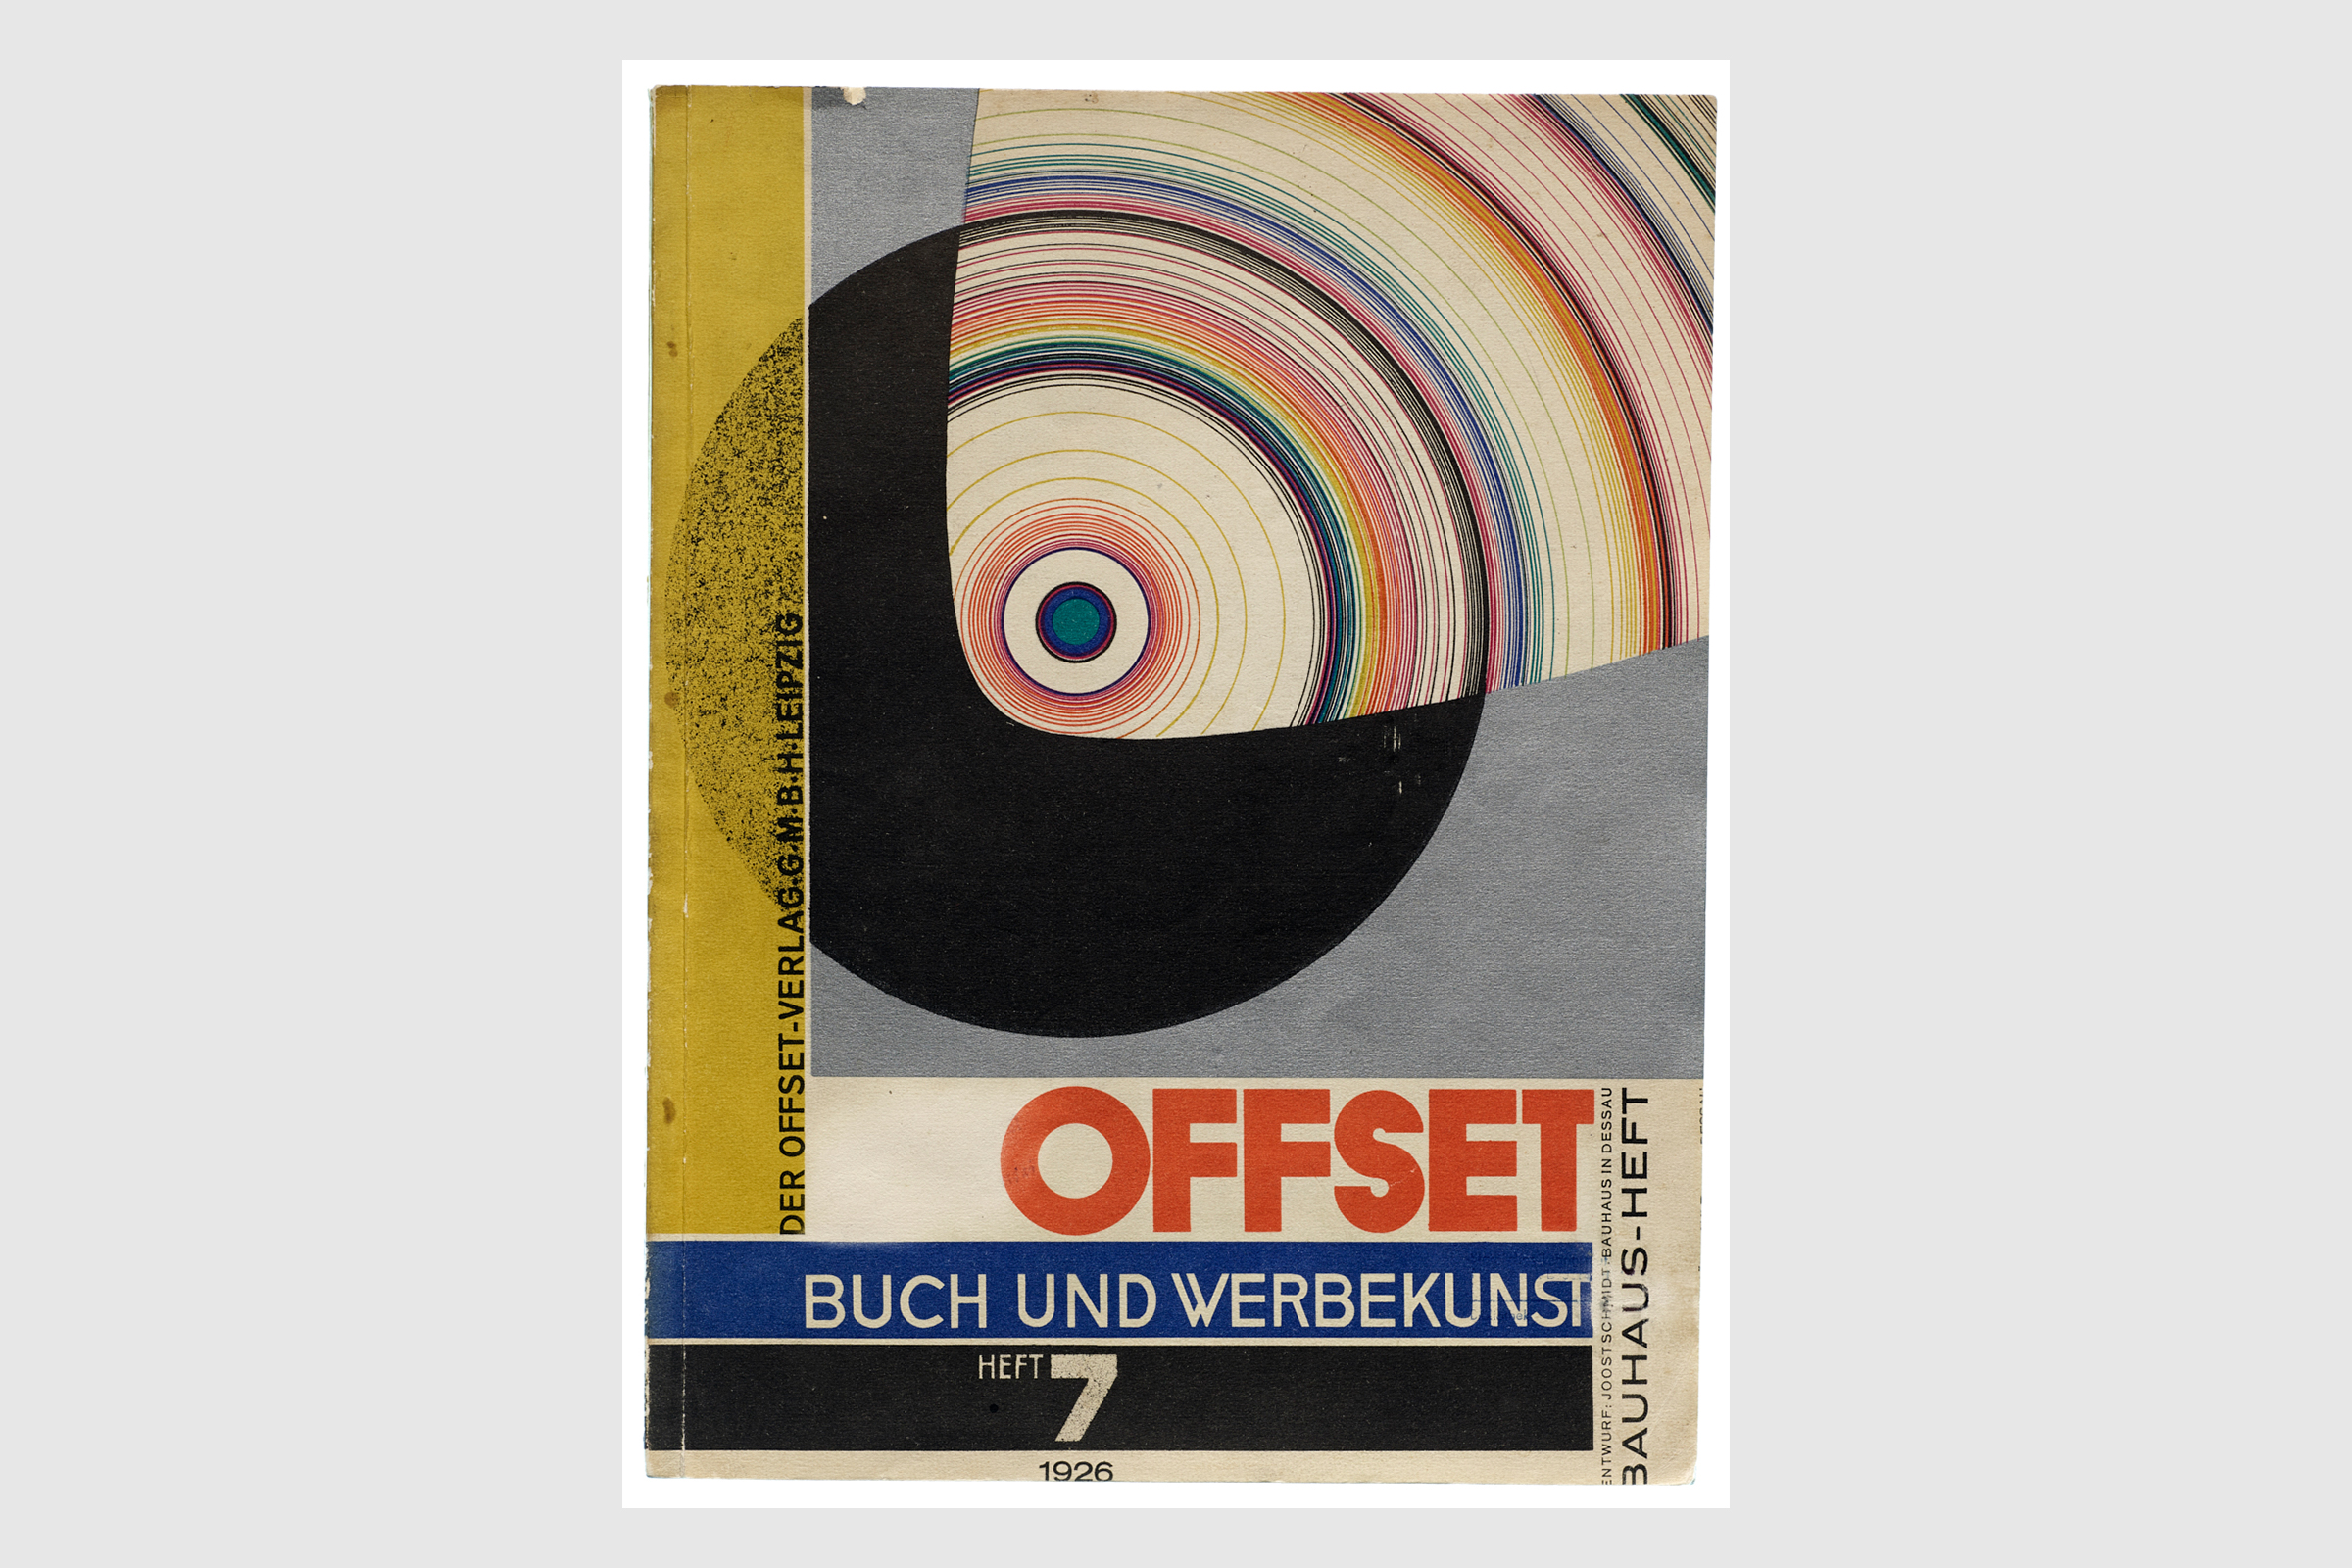 Joost Schmidt (cover designer) Offset: Book and Advertising Art, Bauhaus Issue (Offset: Buch und Werbekunst, Bauhaus-heft), vol. 3, no. 7, 1926.